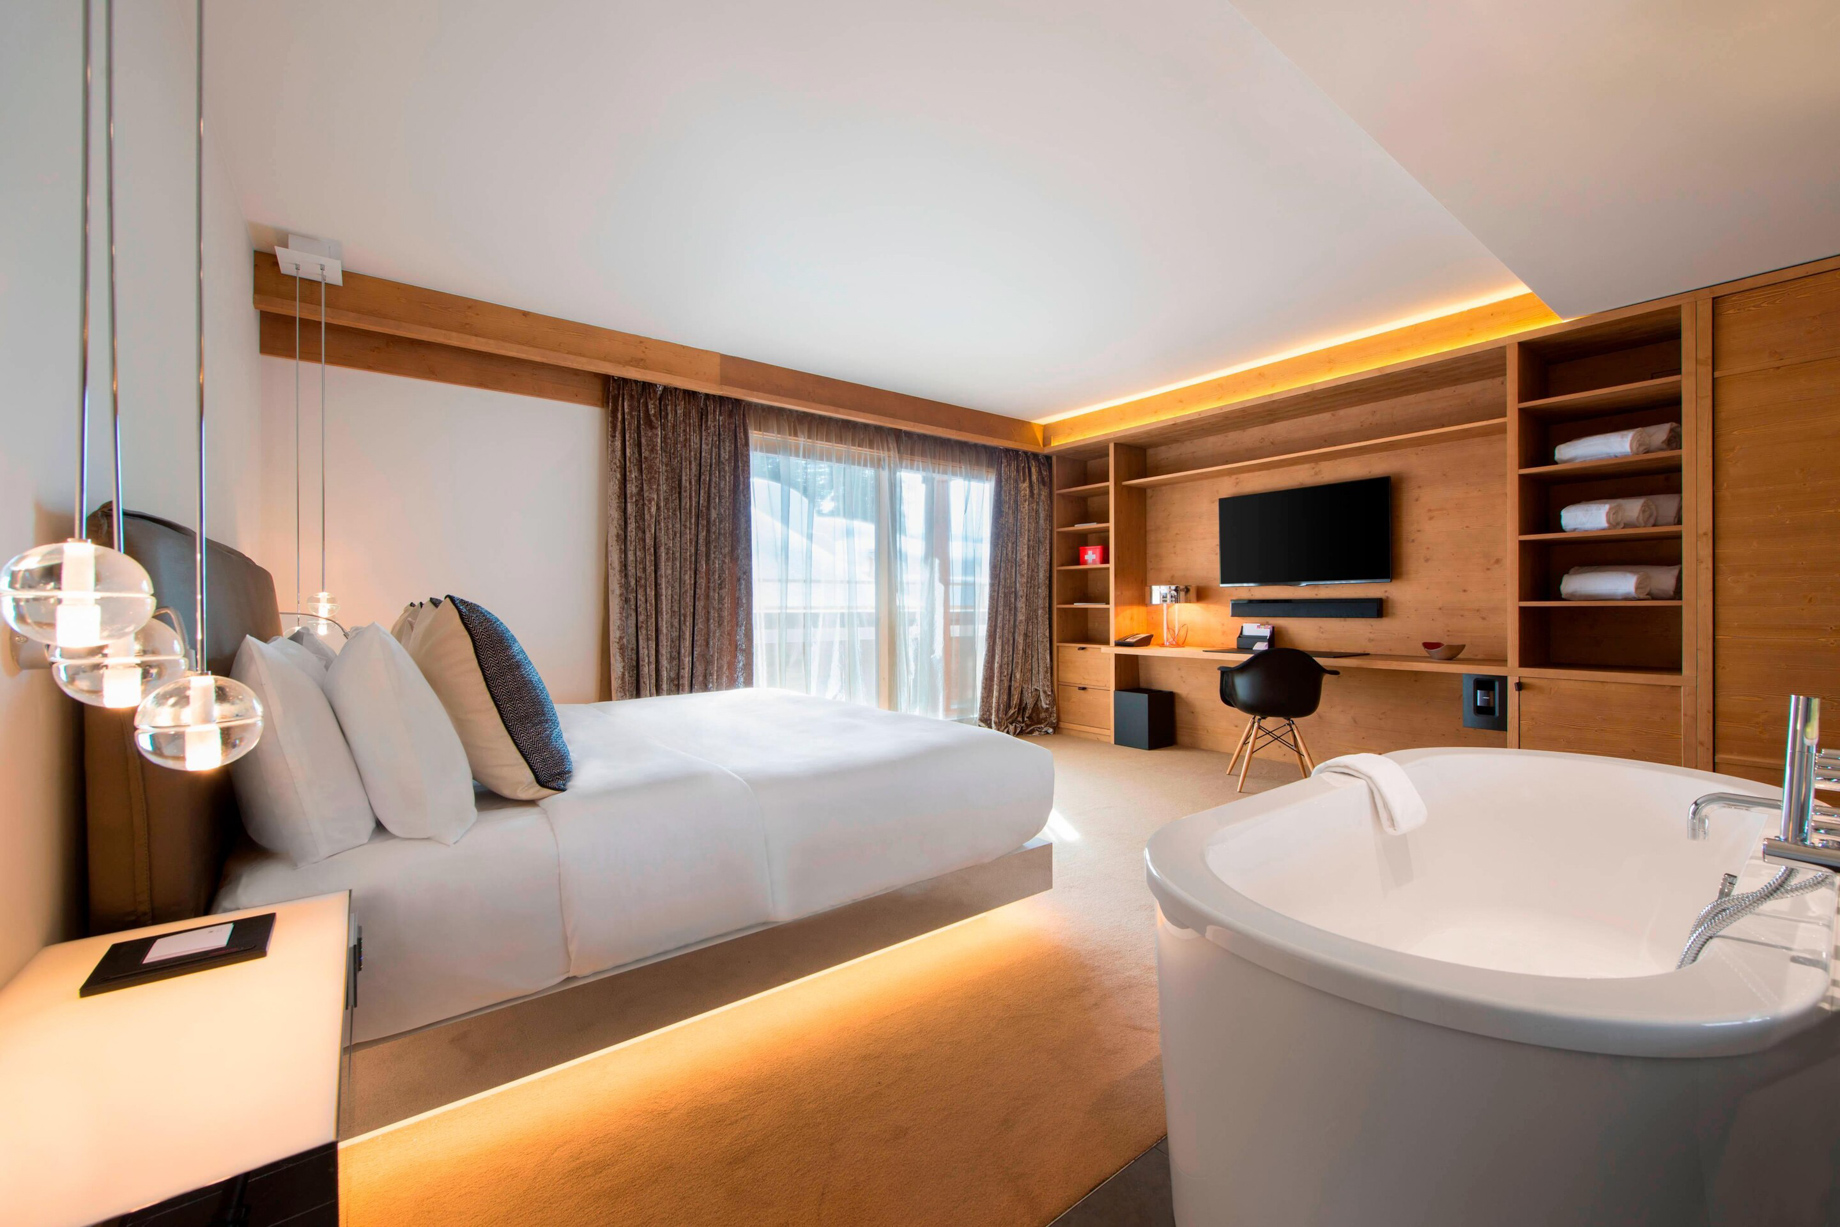 W Verbier Hotel – Verbier, Switzerland – Residence Bedroom